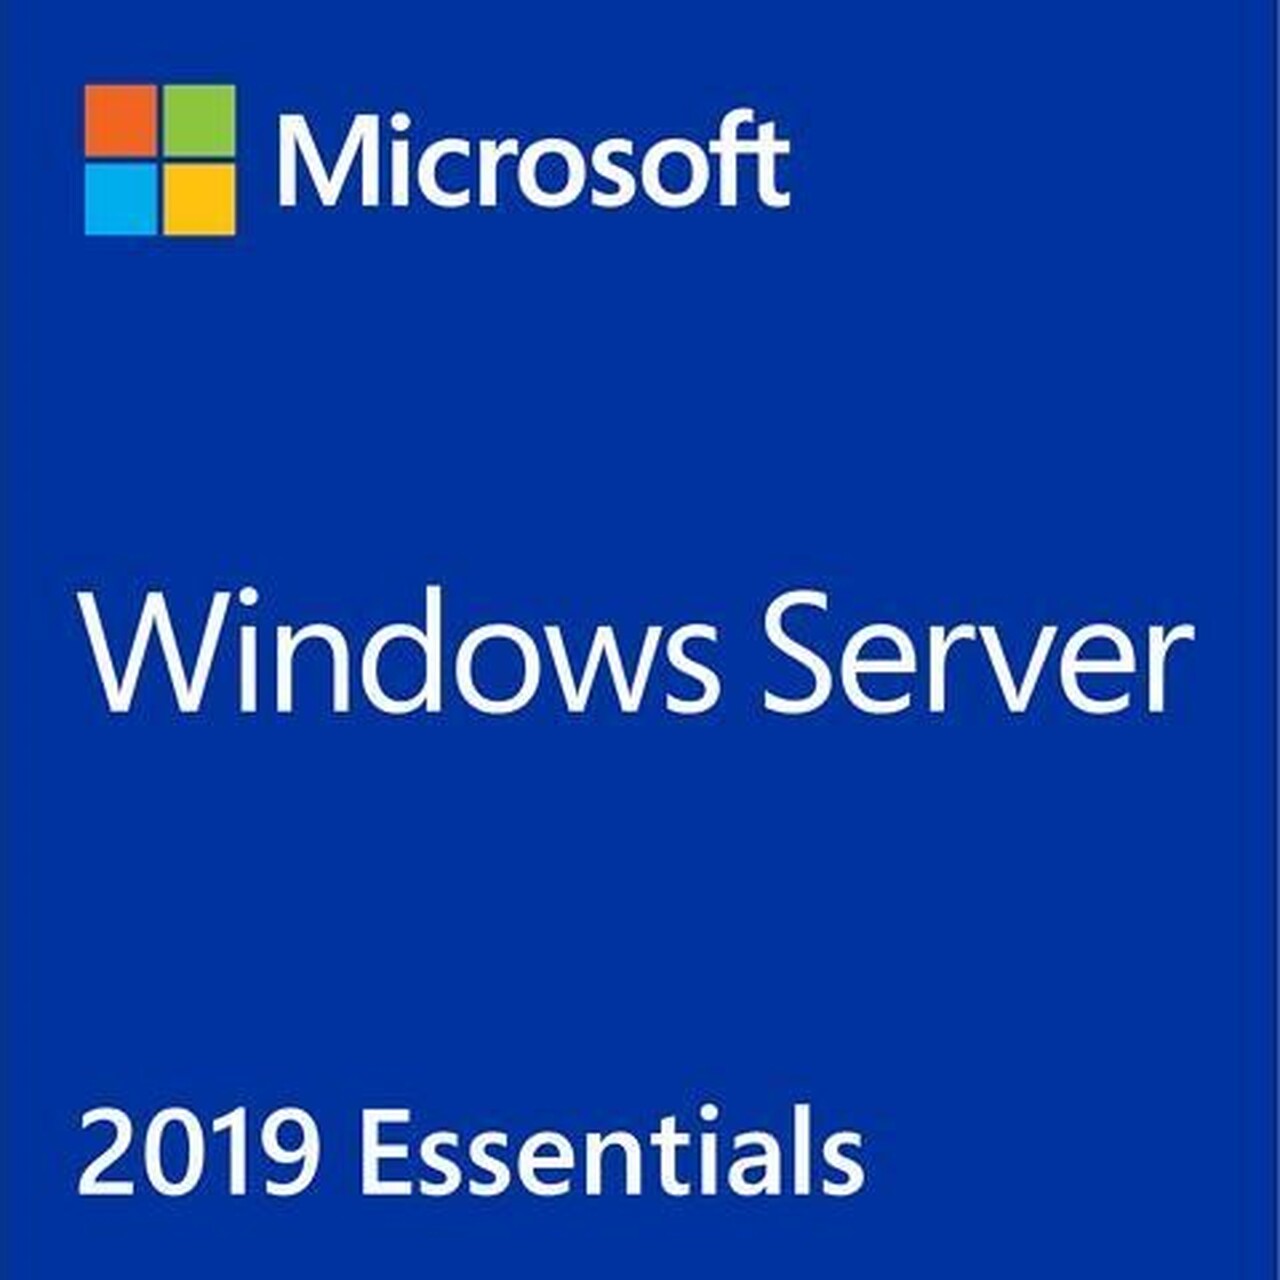 Windows Server 2019 Essentials Hosting